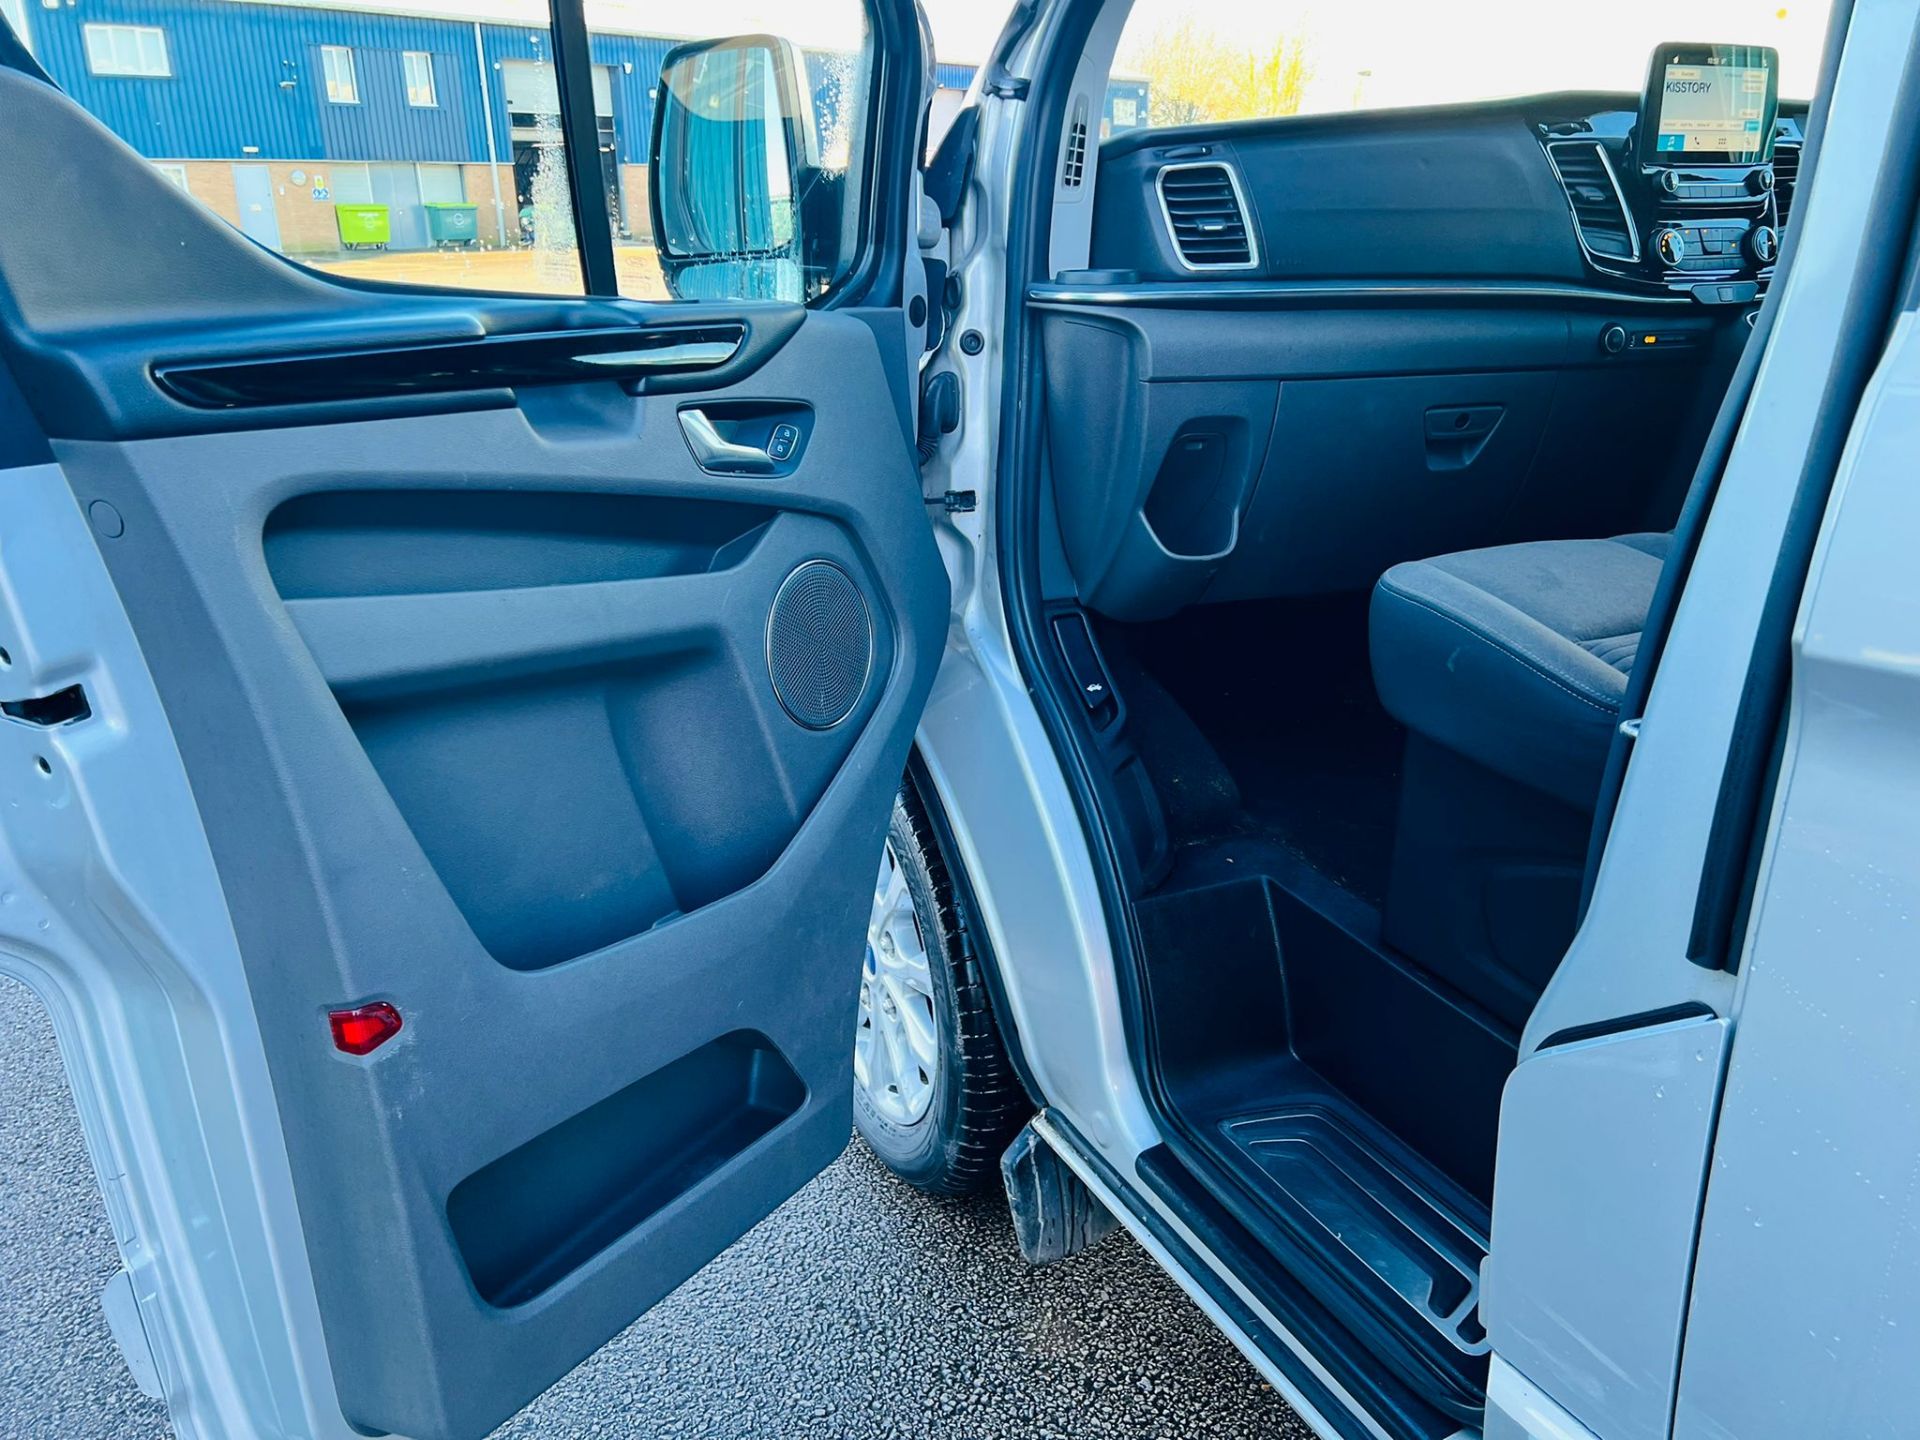 (Reserve Met) Ford Transit Custom 310 130 2.0 Tdci Titanium 9 Seater MiniBus 2019 Model - Air Con - - Image 14 of 36